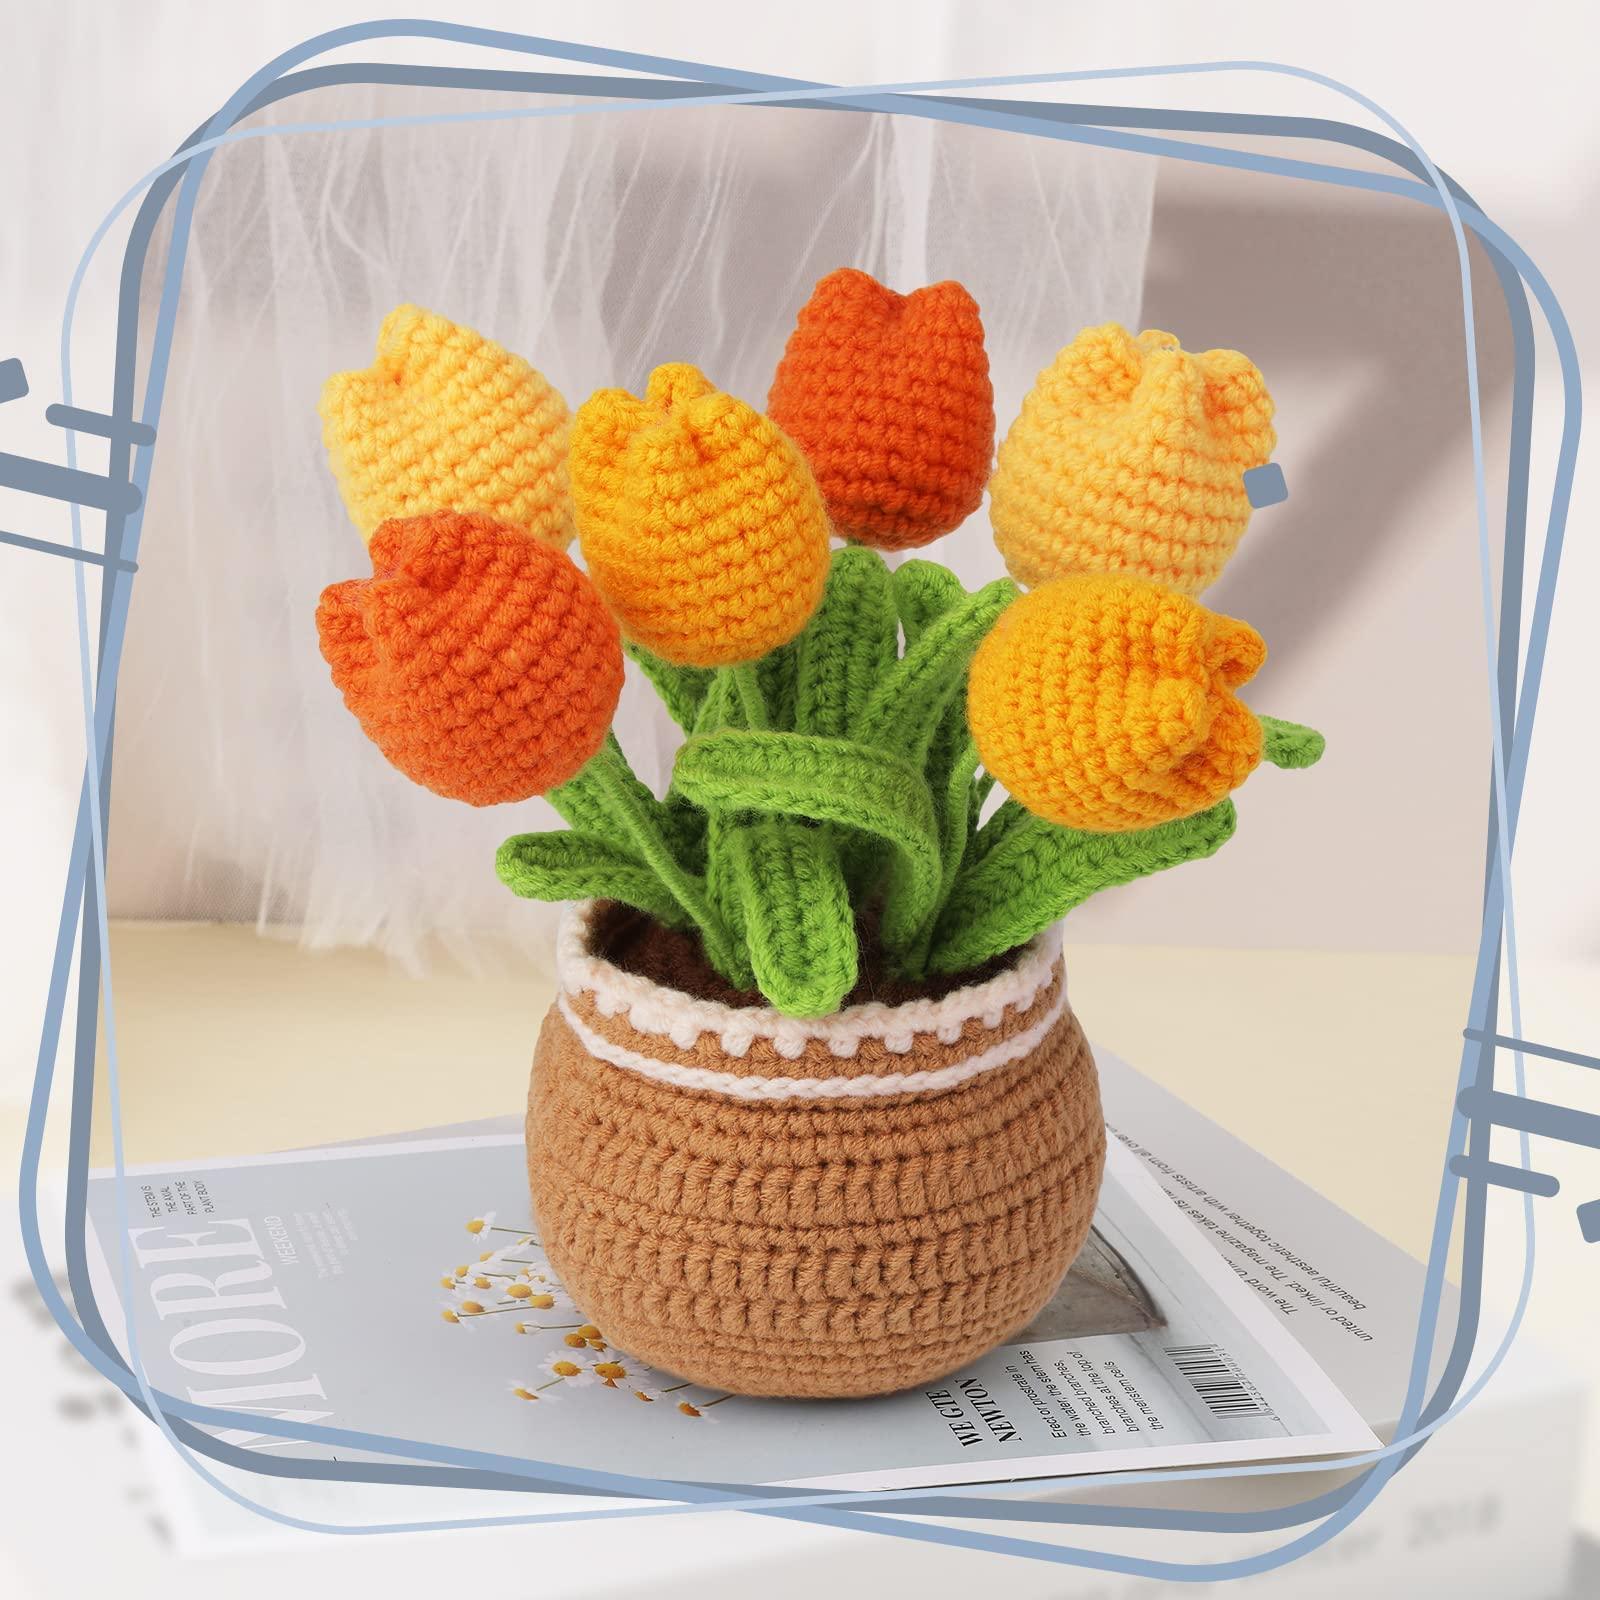  TEHAUX 4 Sets Crochet Bouquet Kit Fresh Flower Bouquet Tulip  Crochet Hook Crochet Kits Crochet Kit for Beginners Adults Knitting Kit  Suit DIY Kits Crochet Flower Yarn Animal Child